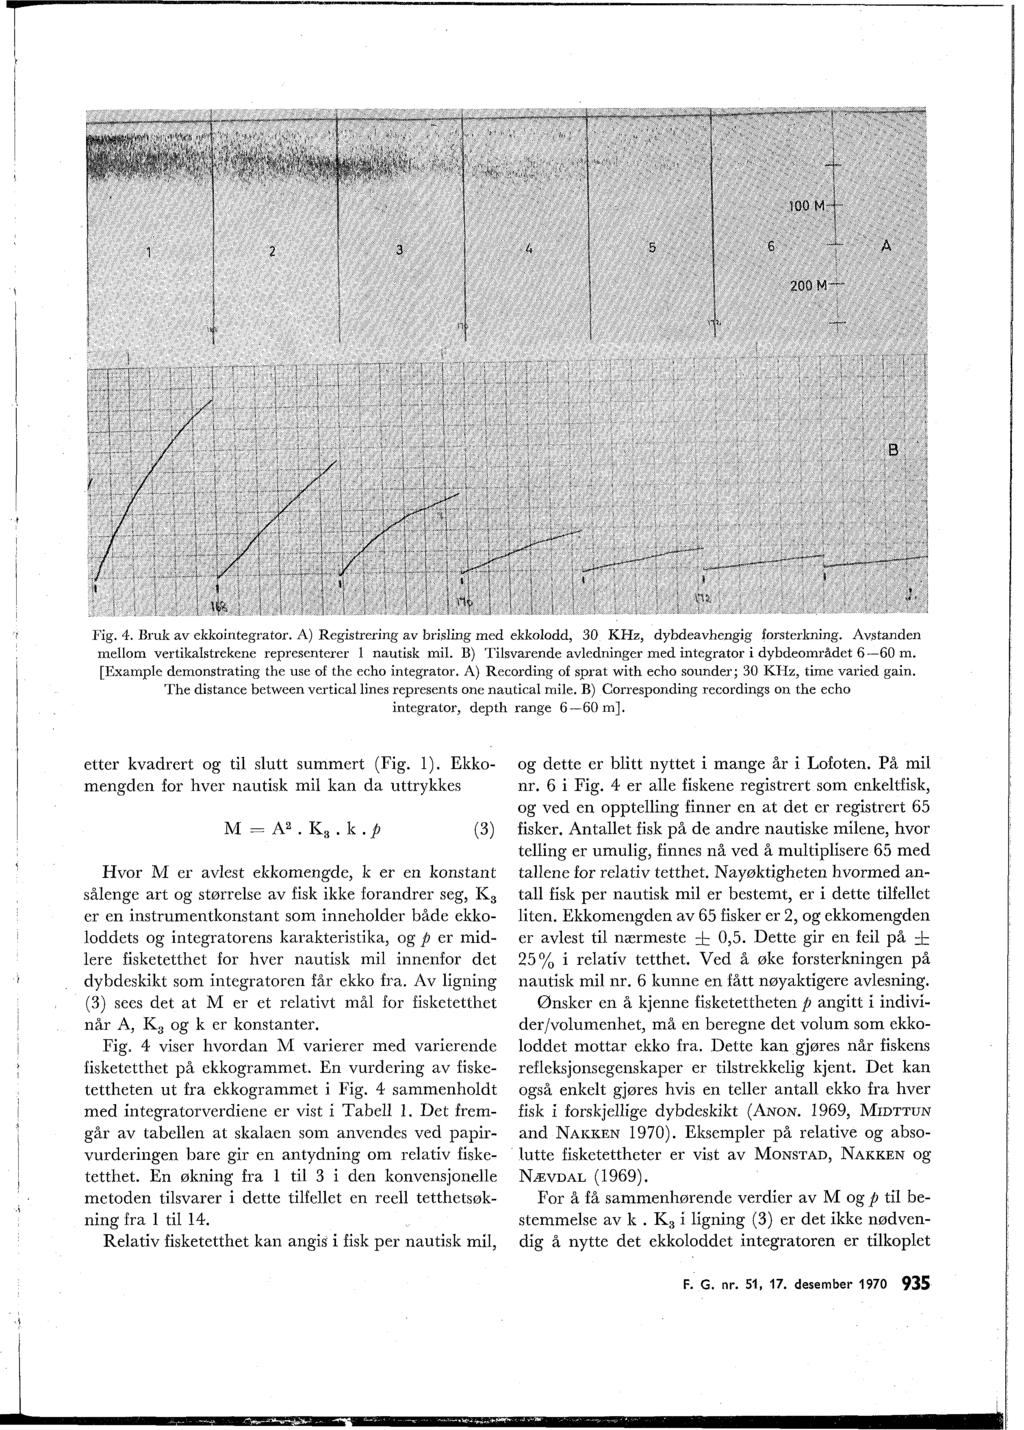 Fig. 4. Bruk av ekkointegrator. A) Registrering av brisling med ekkolodd, 30 KHz, dybdeavhengig forsterlrning. Avstanden mellom vertikalstrekene representerer 1 nautisk mil.